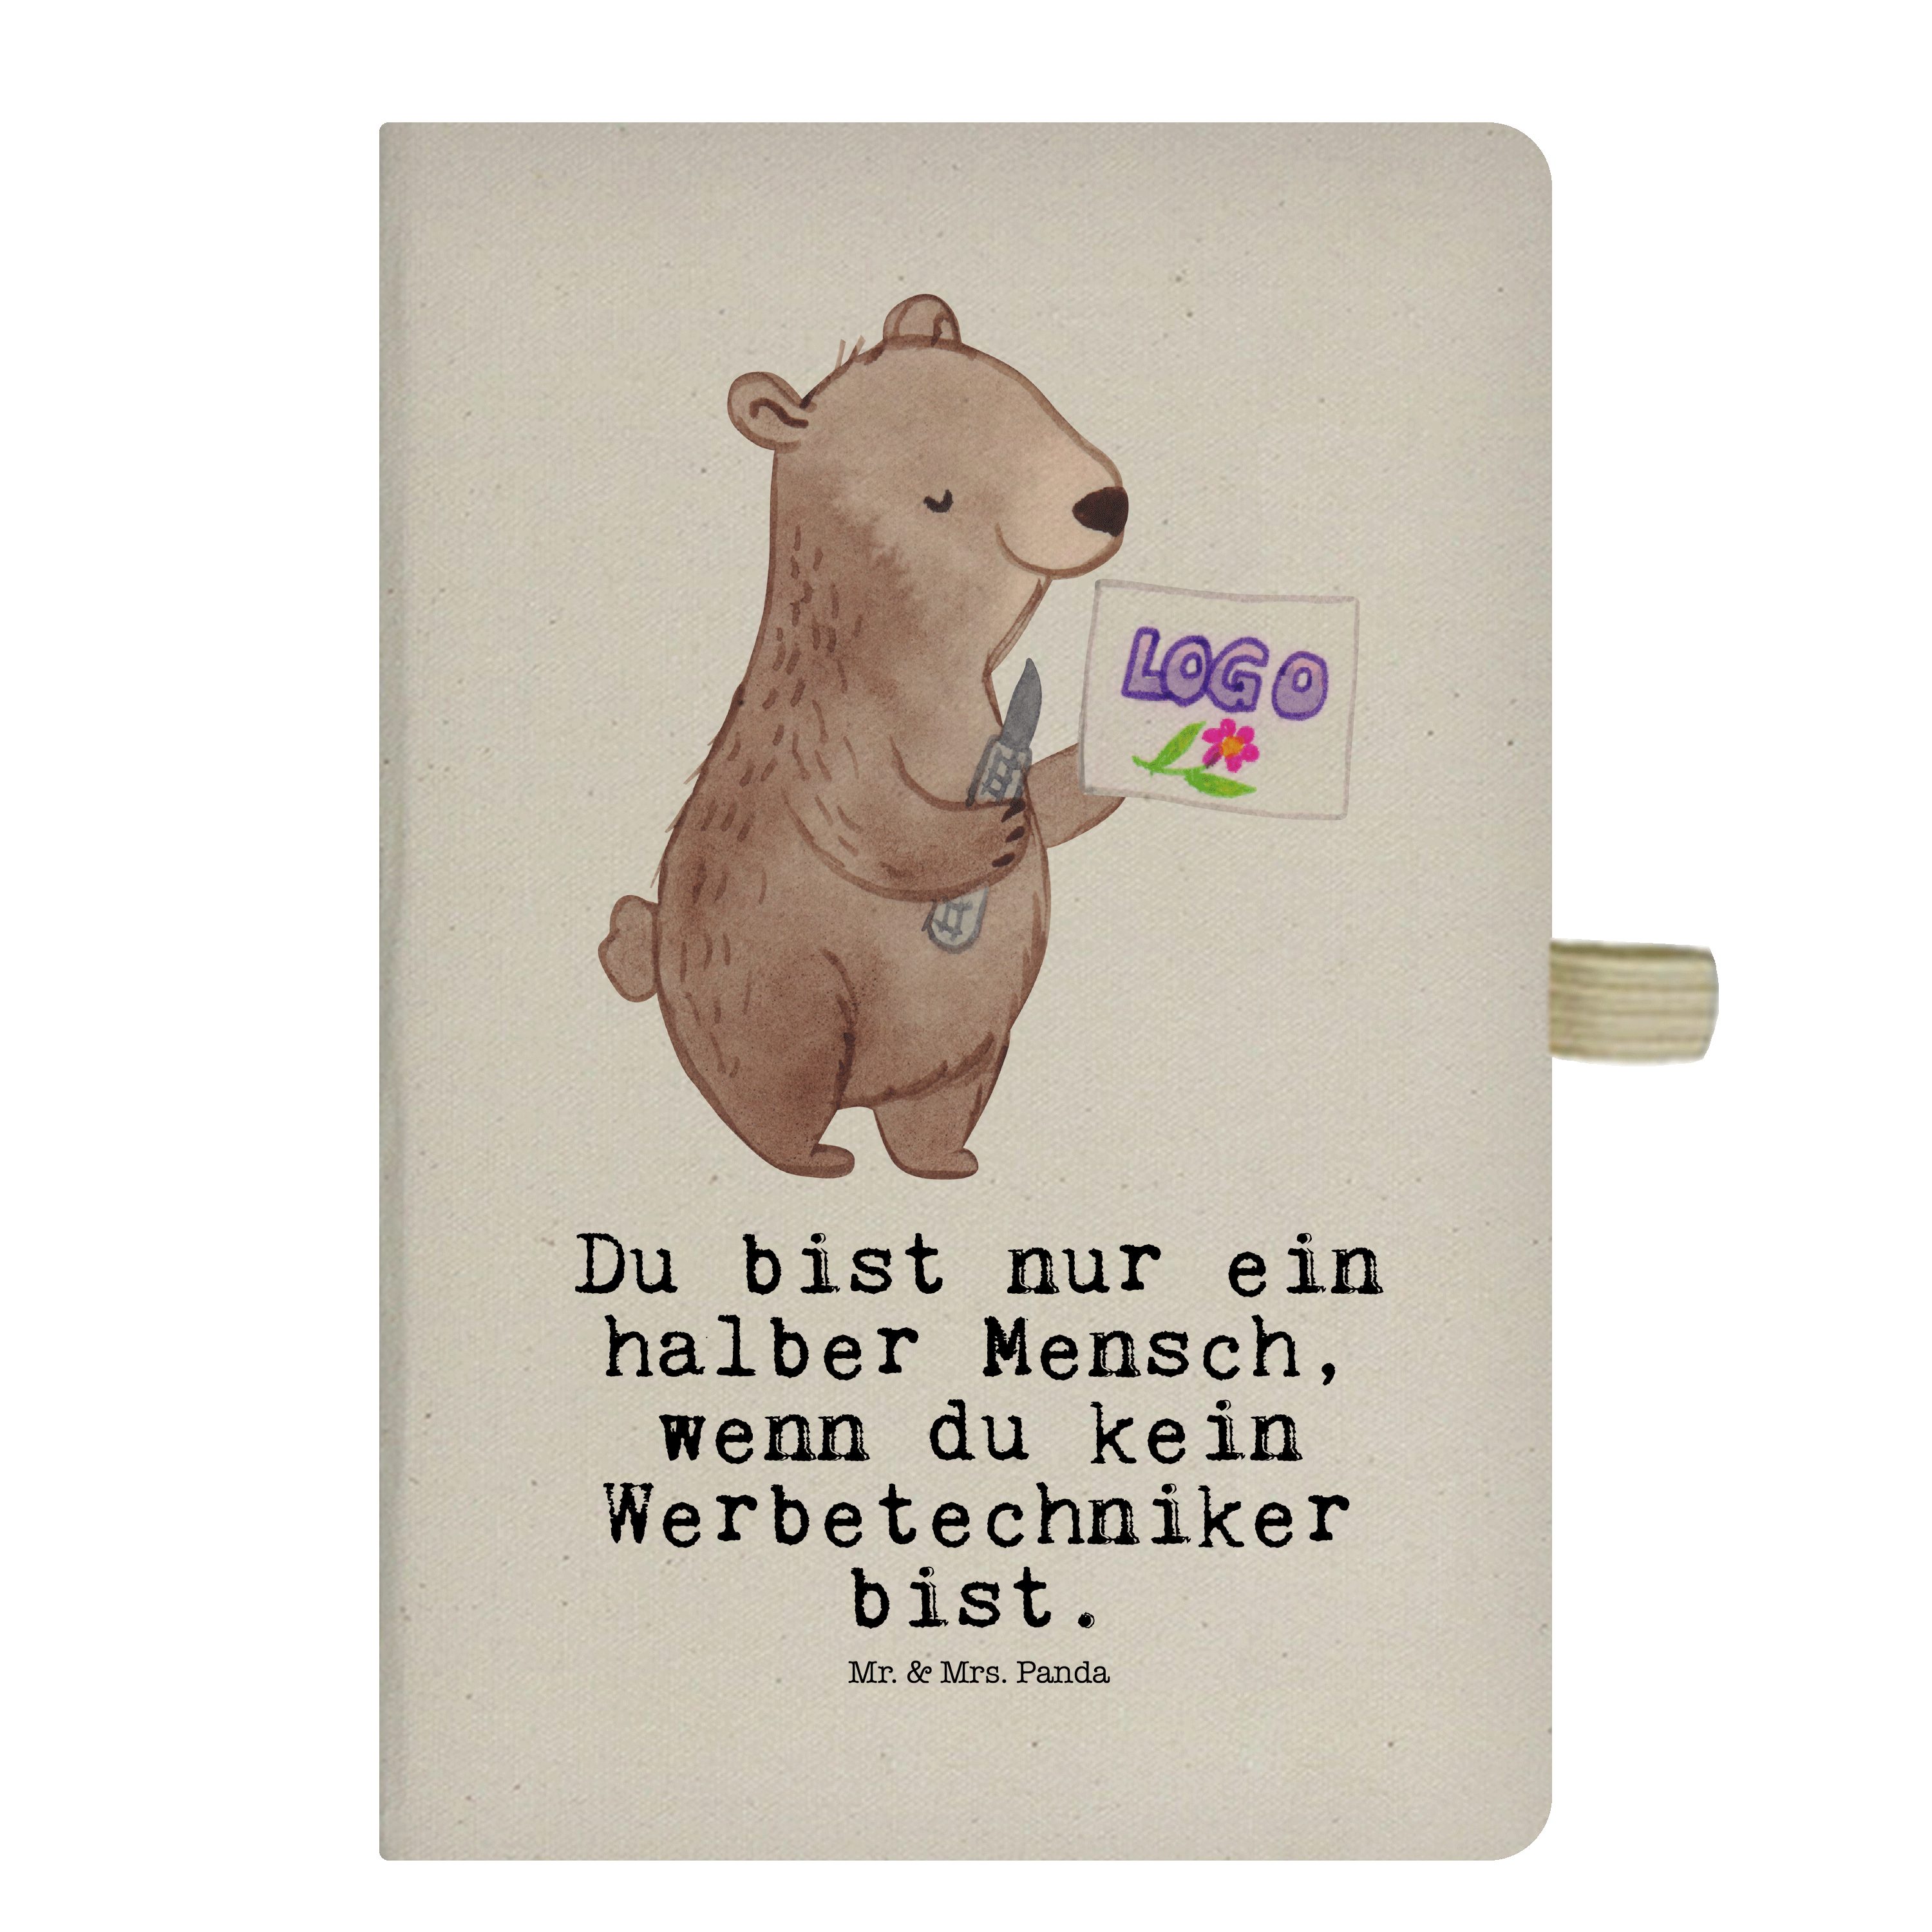 Mr. & Mrs. Panda Notizbuch Werbetechniker mit Herz - Transparent - Geschenk, Tagebuch, Abschied, Mr. & Mrs. Panda